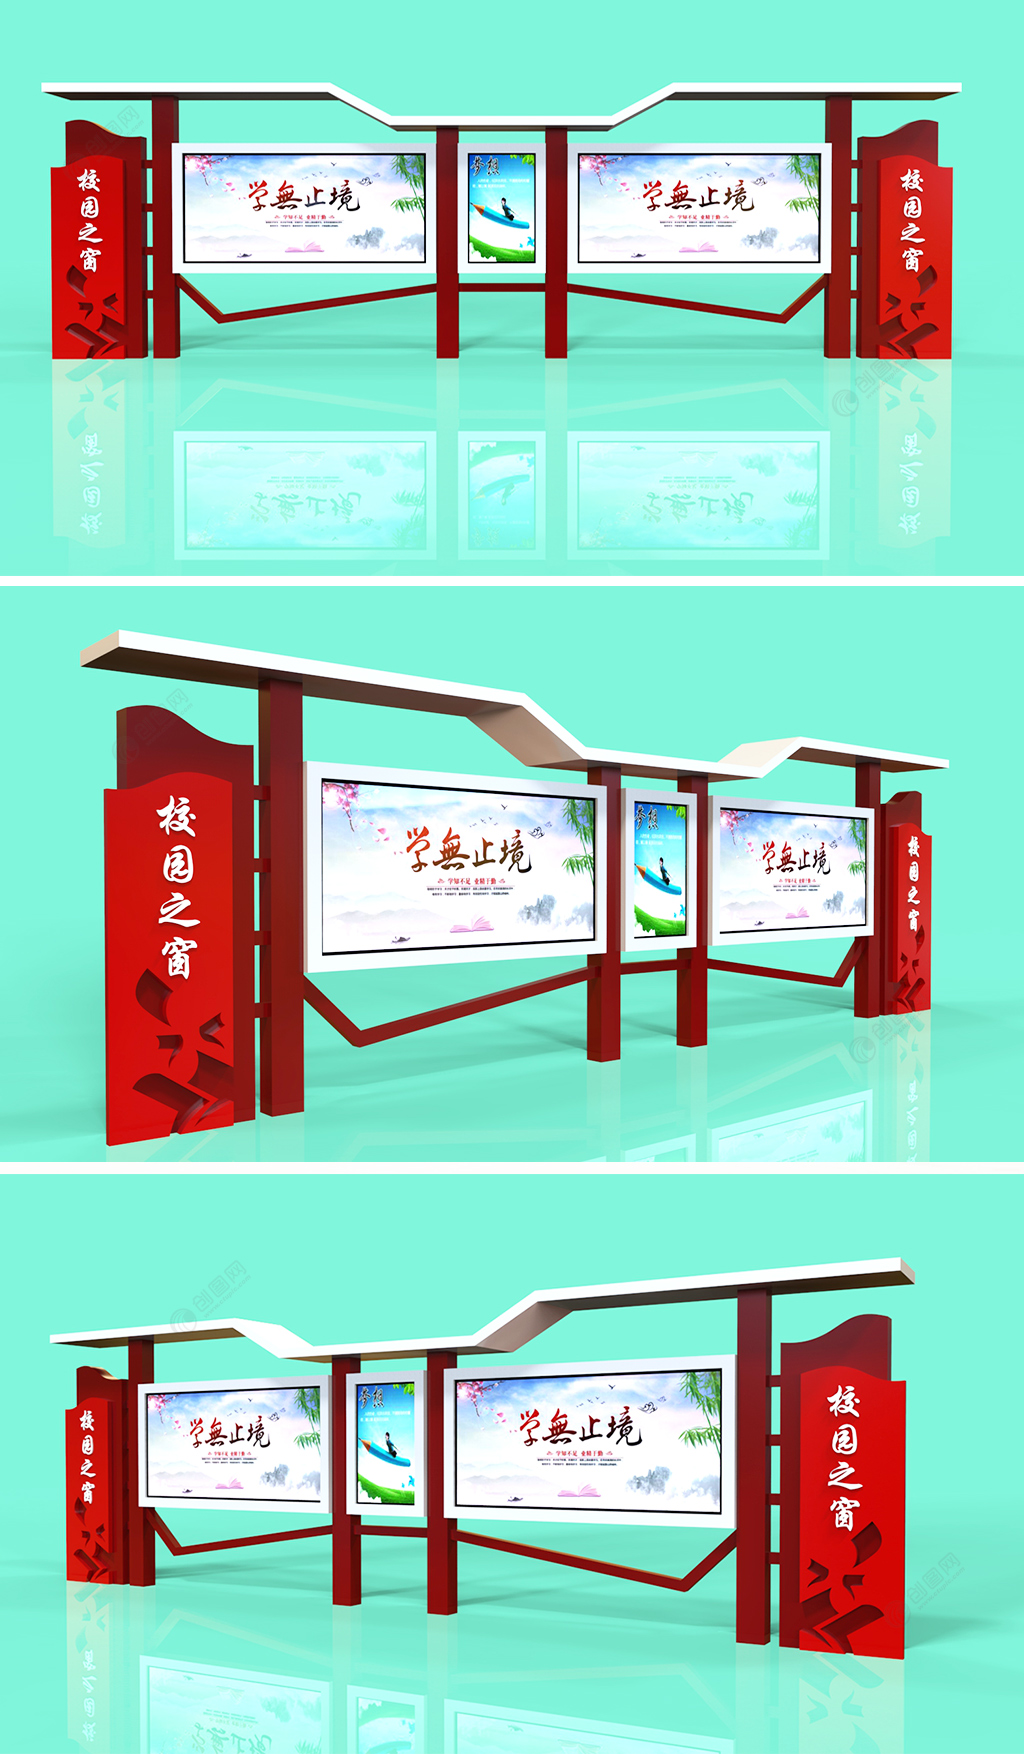 小学校园铝型材宣传栏橱窗宣传窗公告展示栏户外文化墙设计效果图